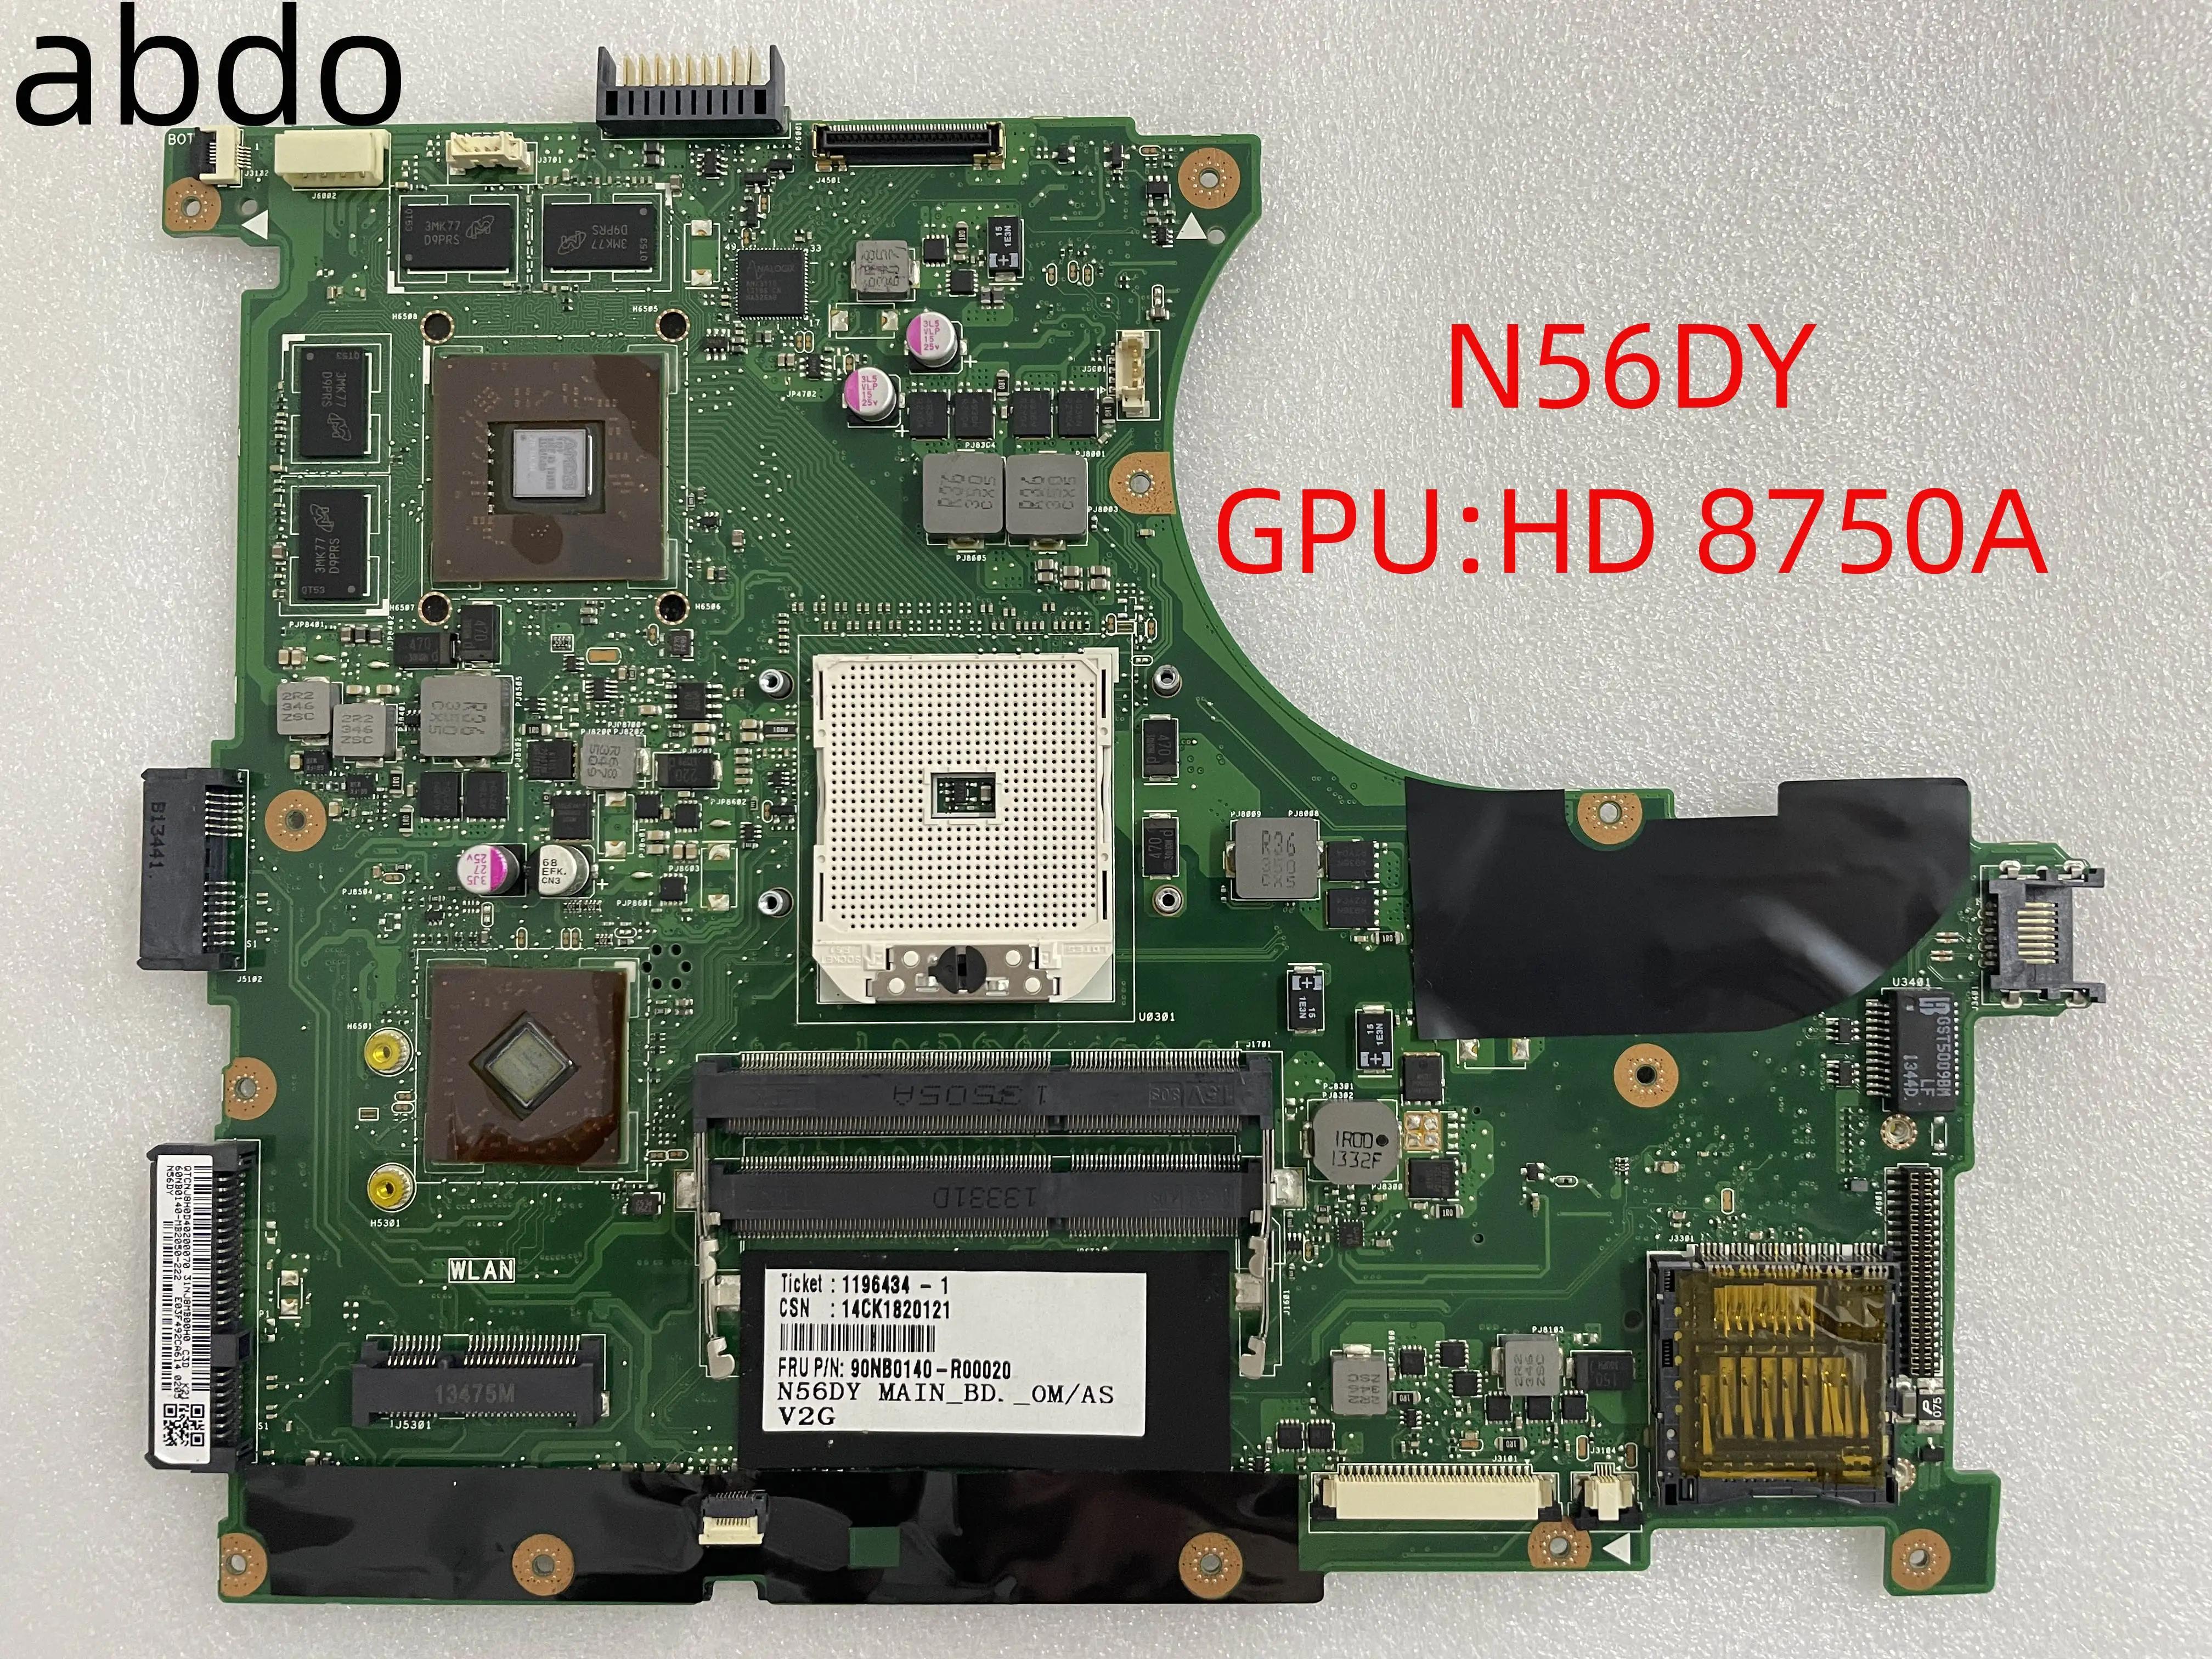 N56DP κ, ASUS N56DY , GPU-hd8750a 